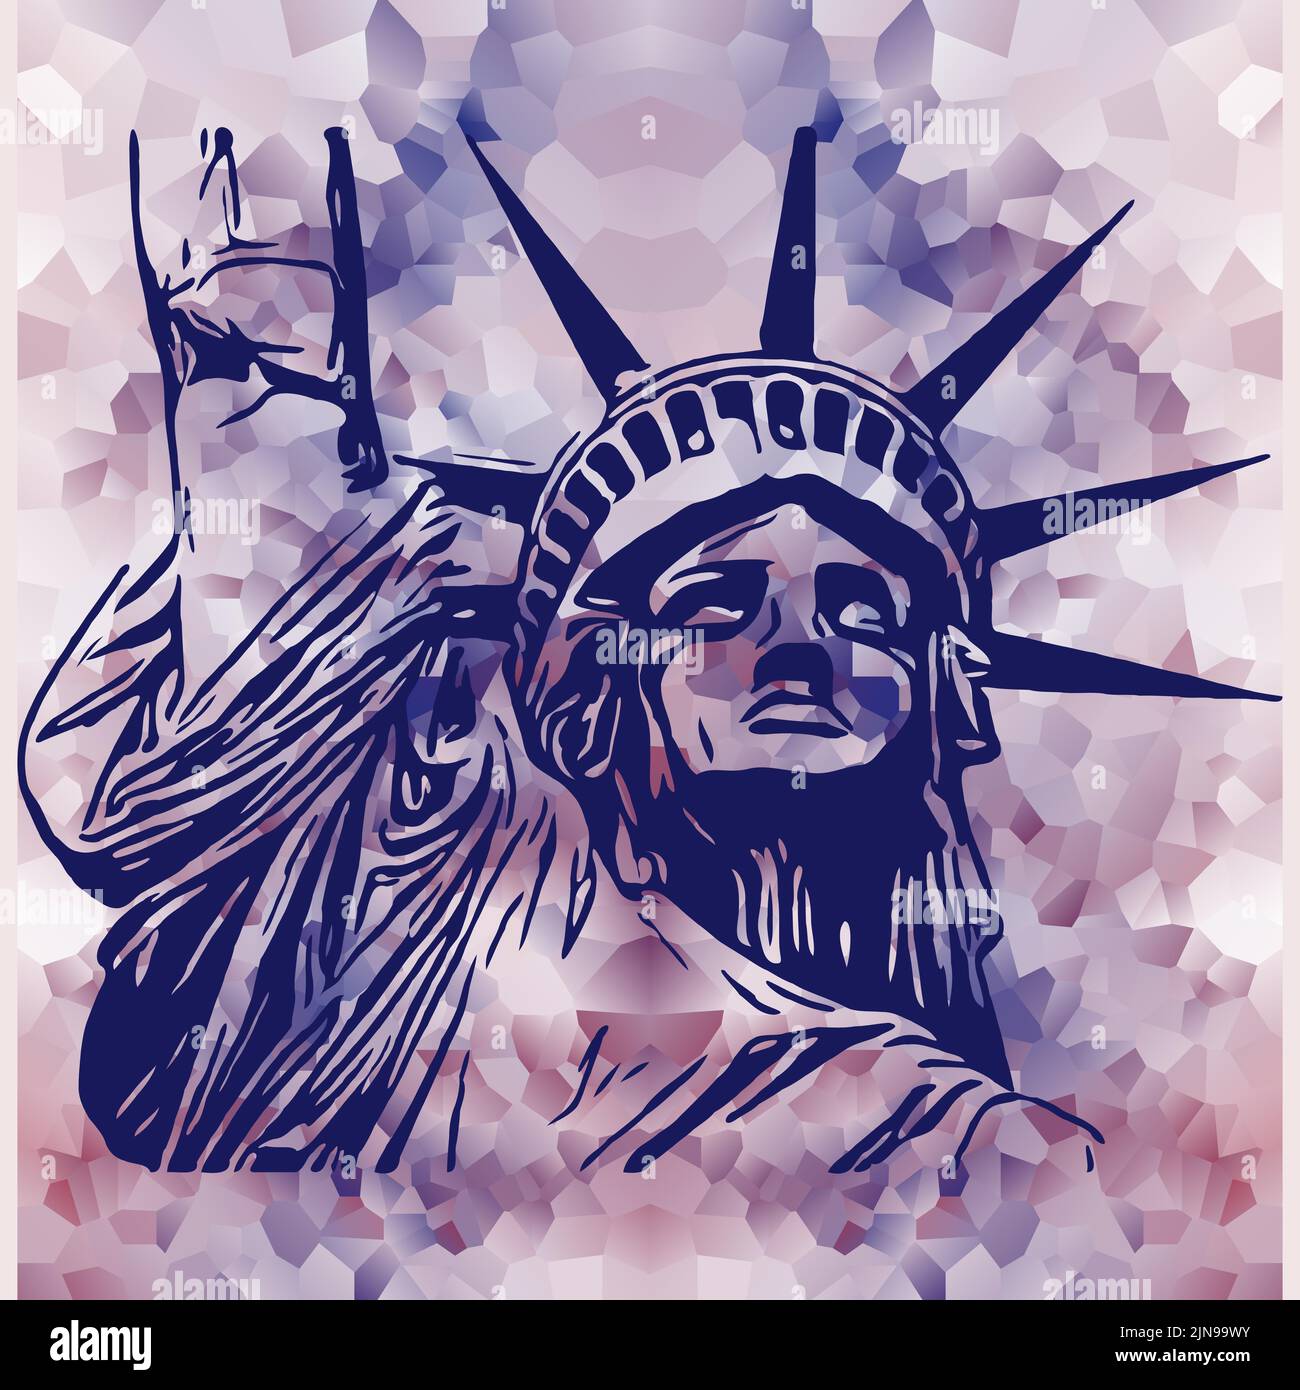 La estatua editable de estilo caricatura Lady Liberty en colores azul y púrpura Ilustración del Vector